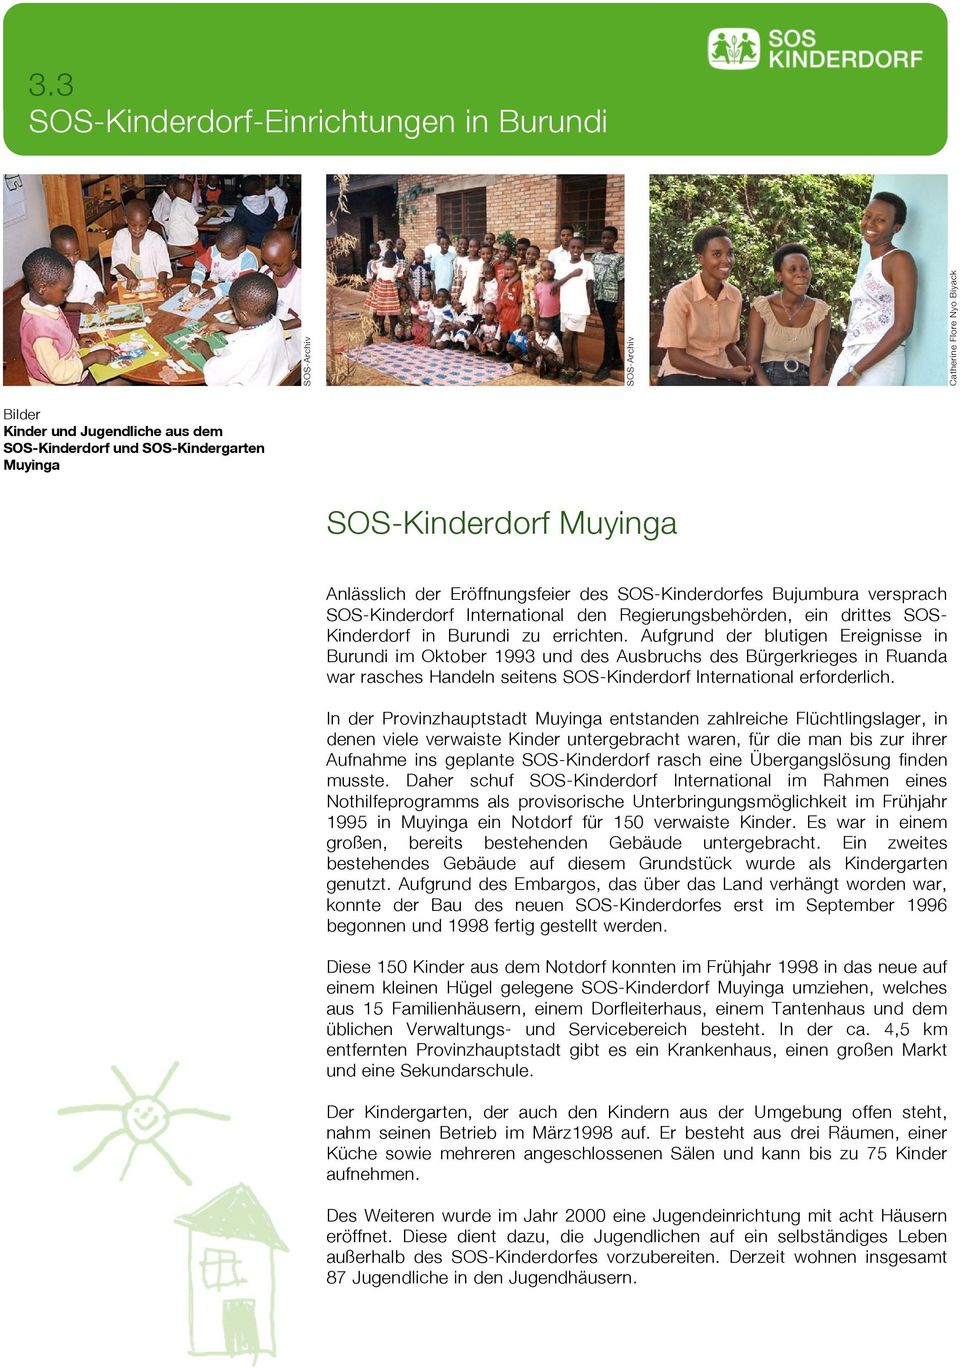 Aufgrund der blutigen Ereignisse in Burundi im Oktober 1993 und des Ausbruchs des Bürgerkrieges in Ruanda war rasches Handeln seitens SOS-Kinderdorf International erforderlich.